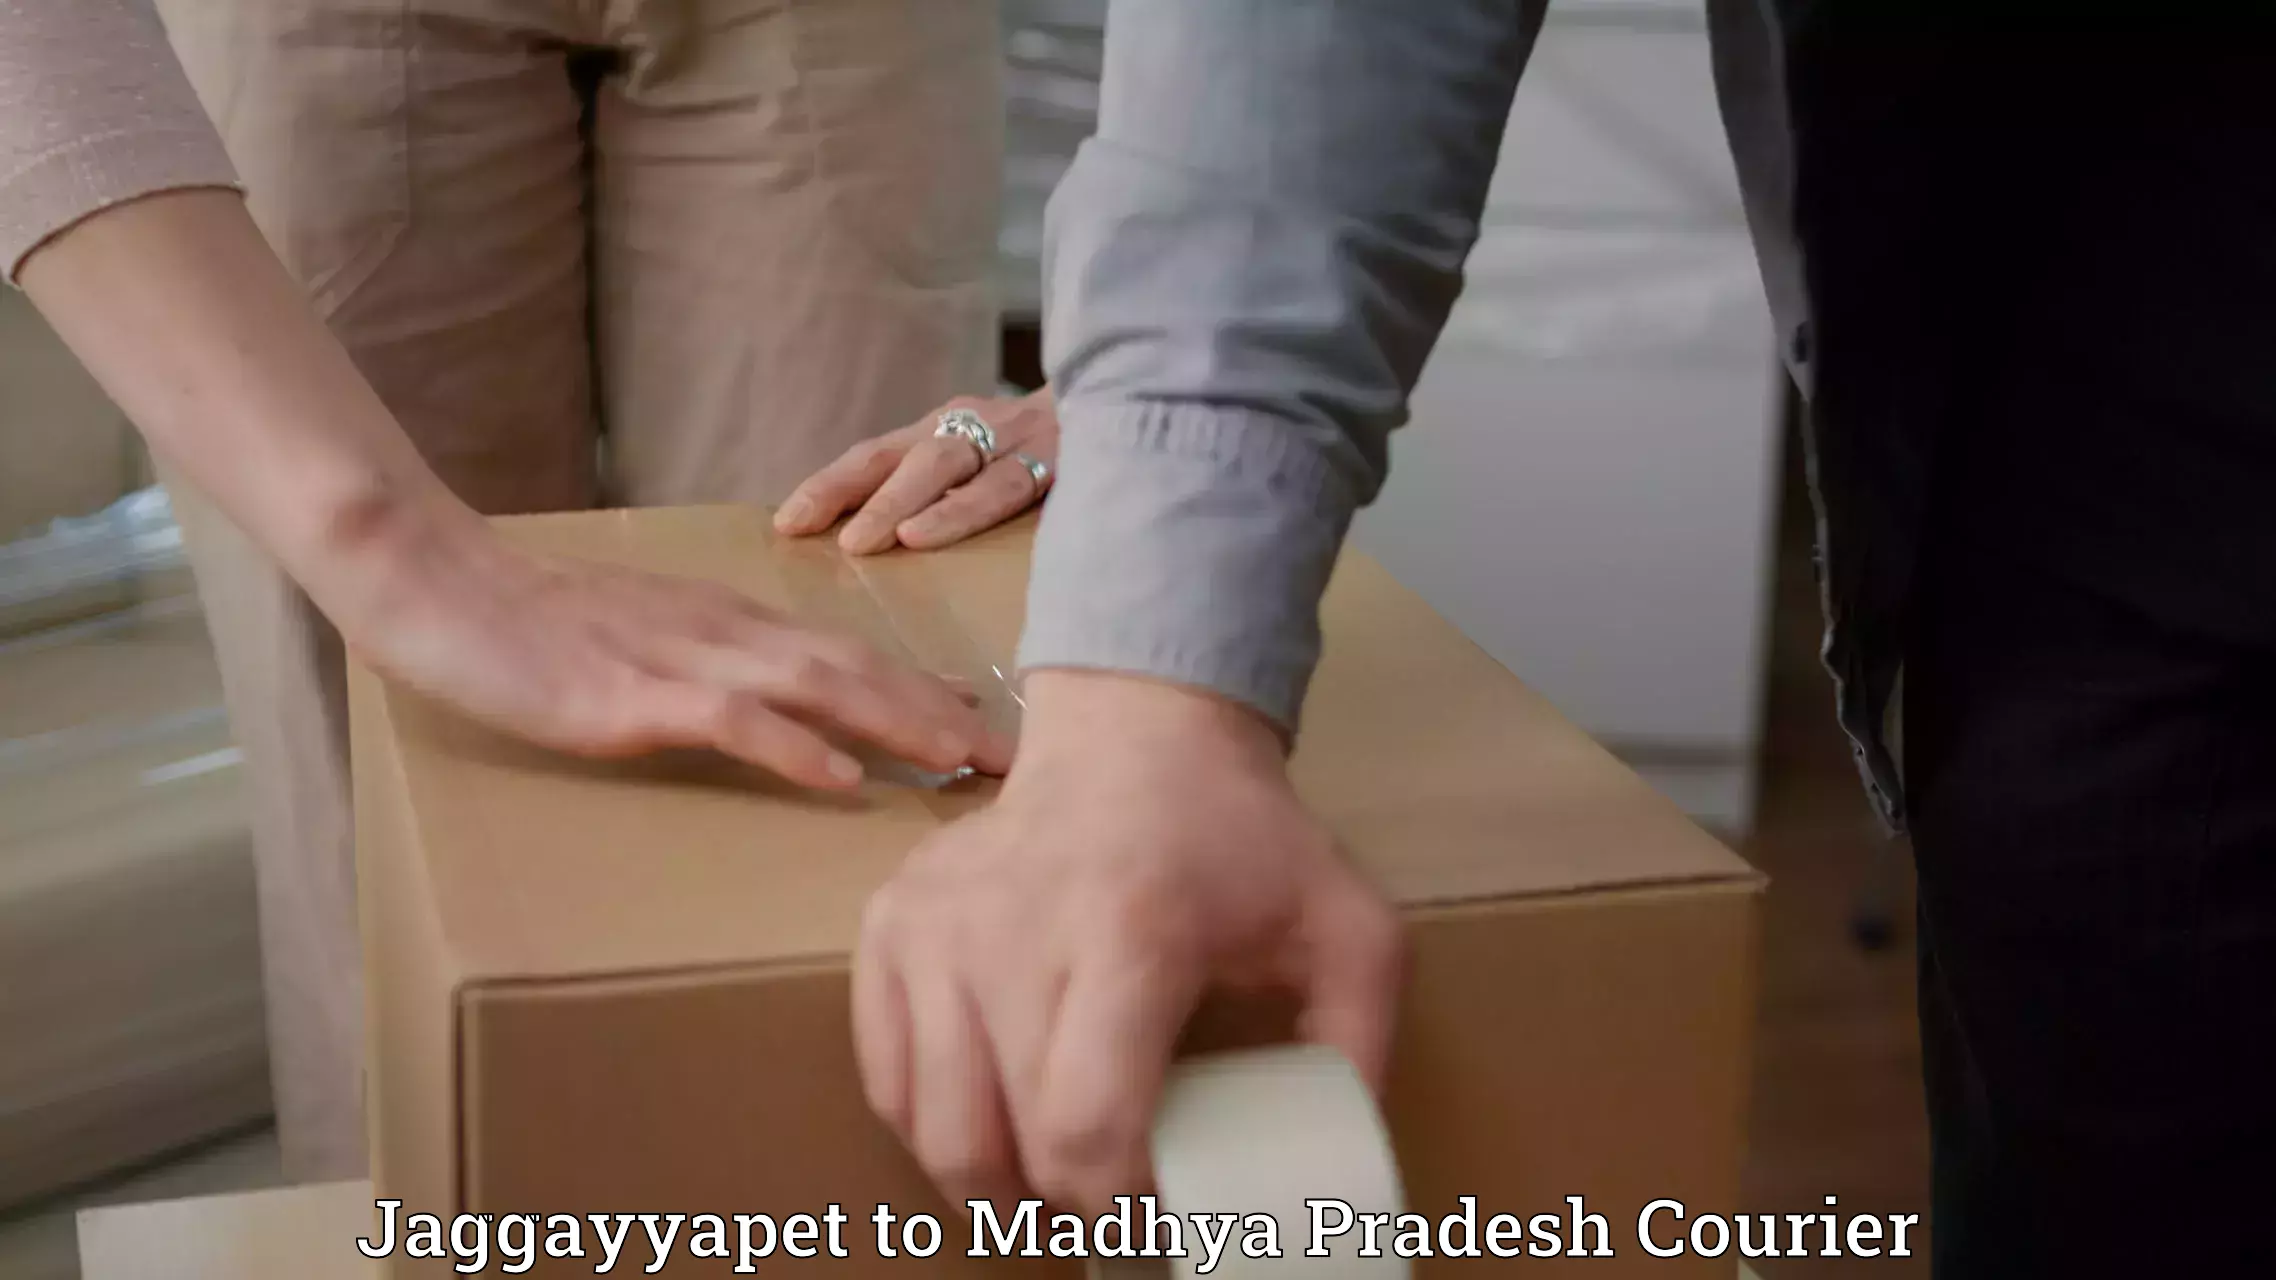 User-friendly courier app Jaggayyapet to Madhya Pradesh